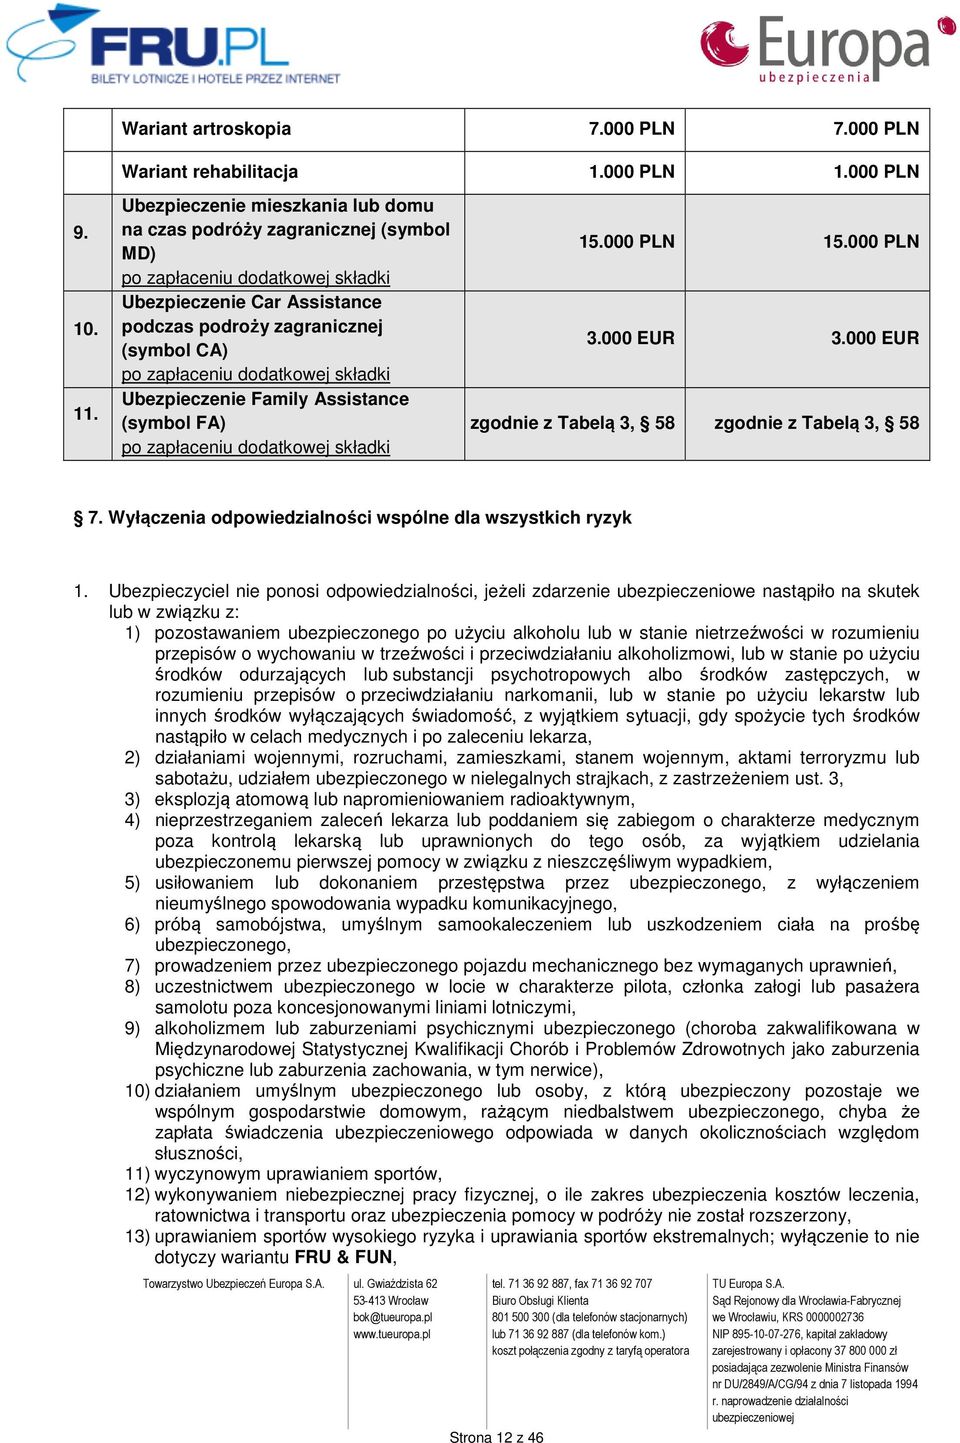 dodatkowej składki Ubezpieczenie Family Assistance (symbol FA) po zapłaceniu dodatkowej składki 15.000 PLN 15.000 PLN 3.000 EUR 3.000 EUR zgodnie z Tabelą 3, 58 zgodnie z Tabelą 3, 58 7.